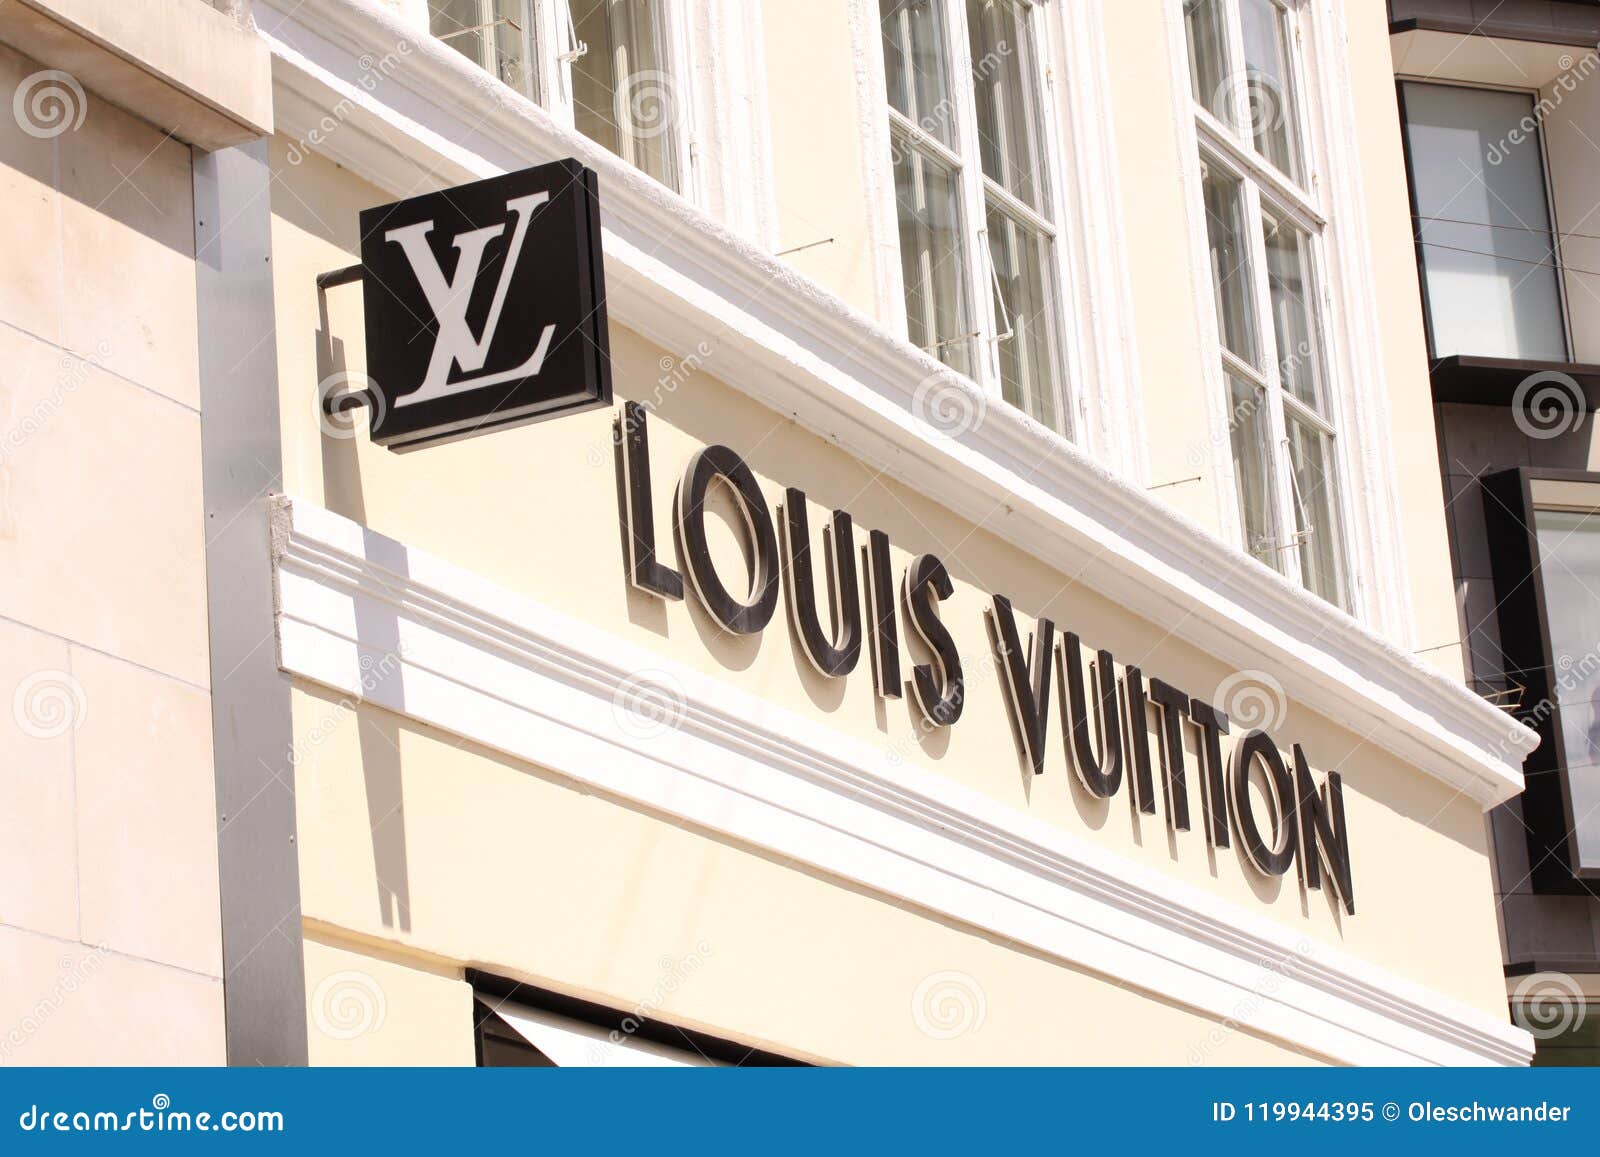 Louis Vuitton Signs | Wydział Cybernetyki